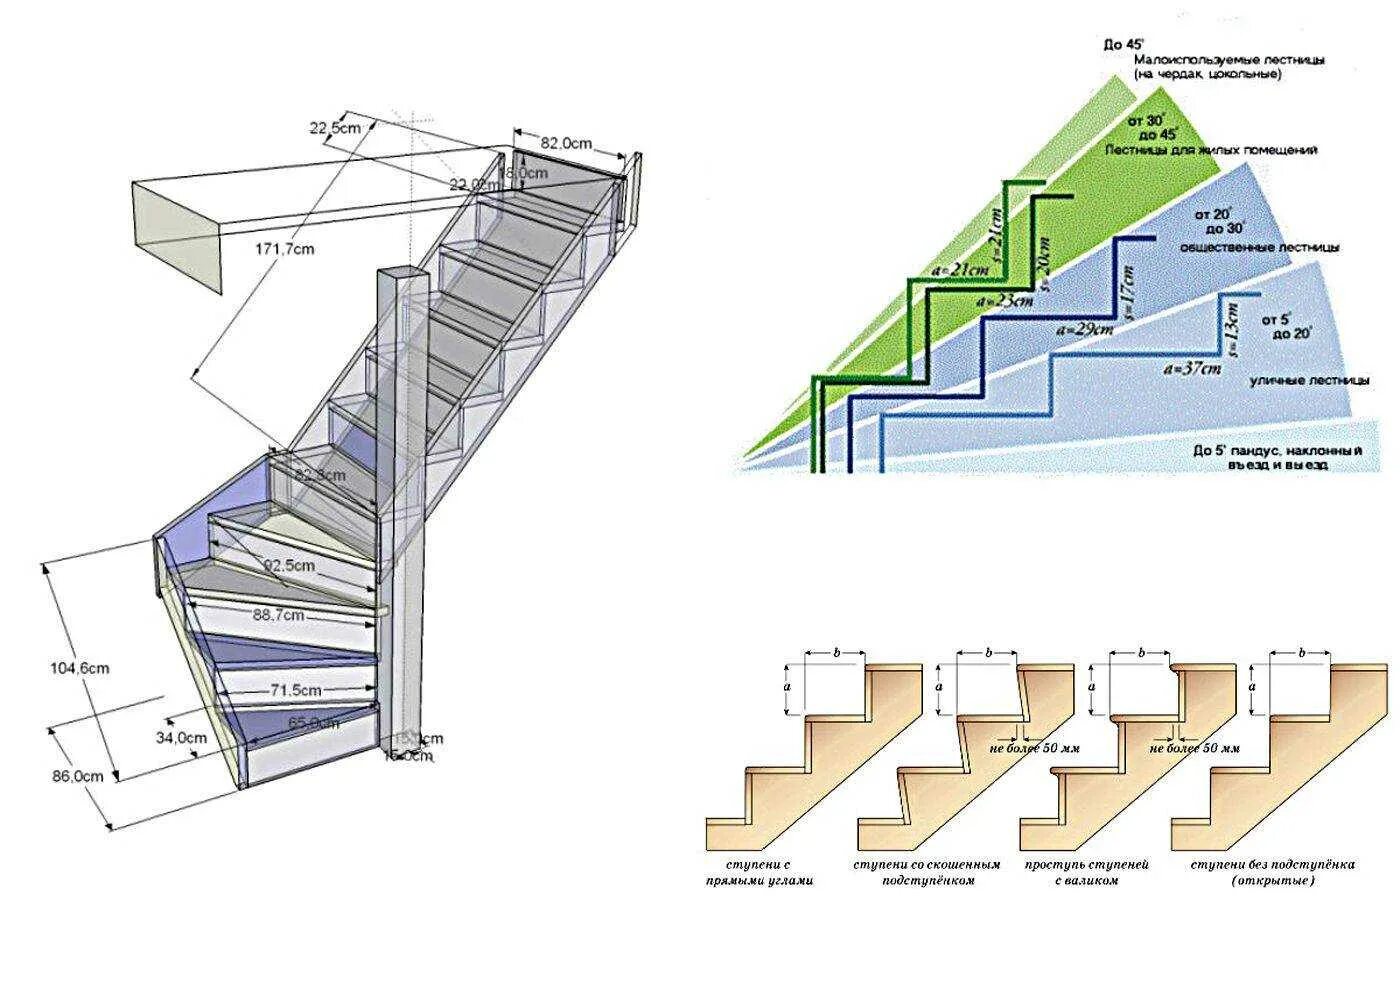 Ступени в лестницы 200 мм ширина. Как рассчитать Размеры лестницы на 2 этаж. Высота ступеней максимальная для лестницы 45. Как правильно рассчитать лестницу на 2 этаж. Максимальный угол лестницы